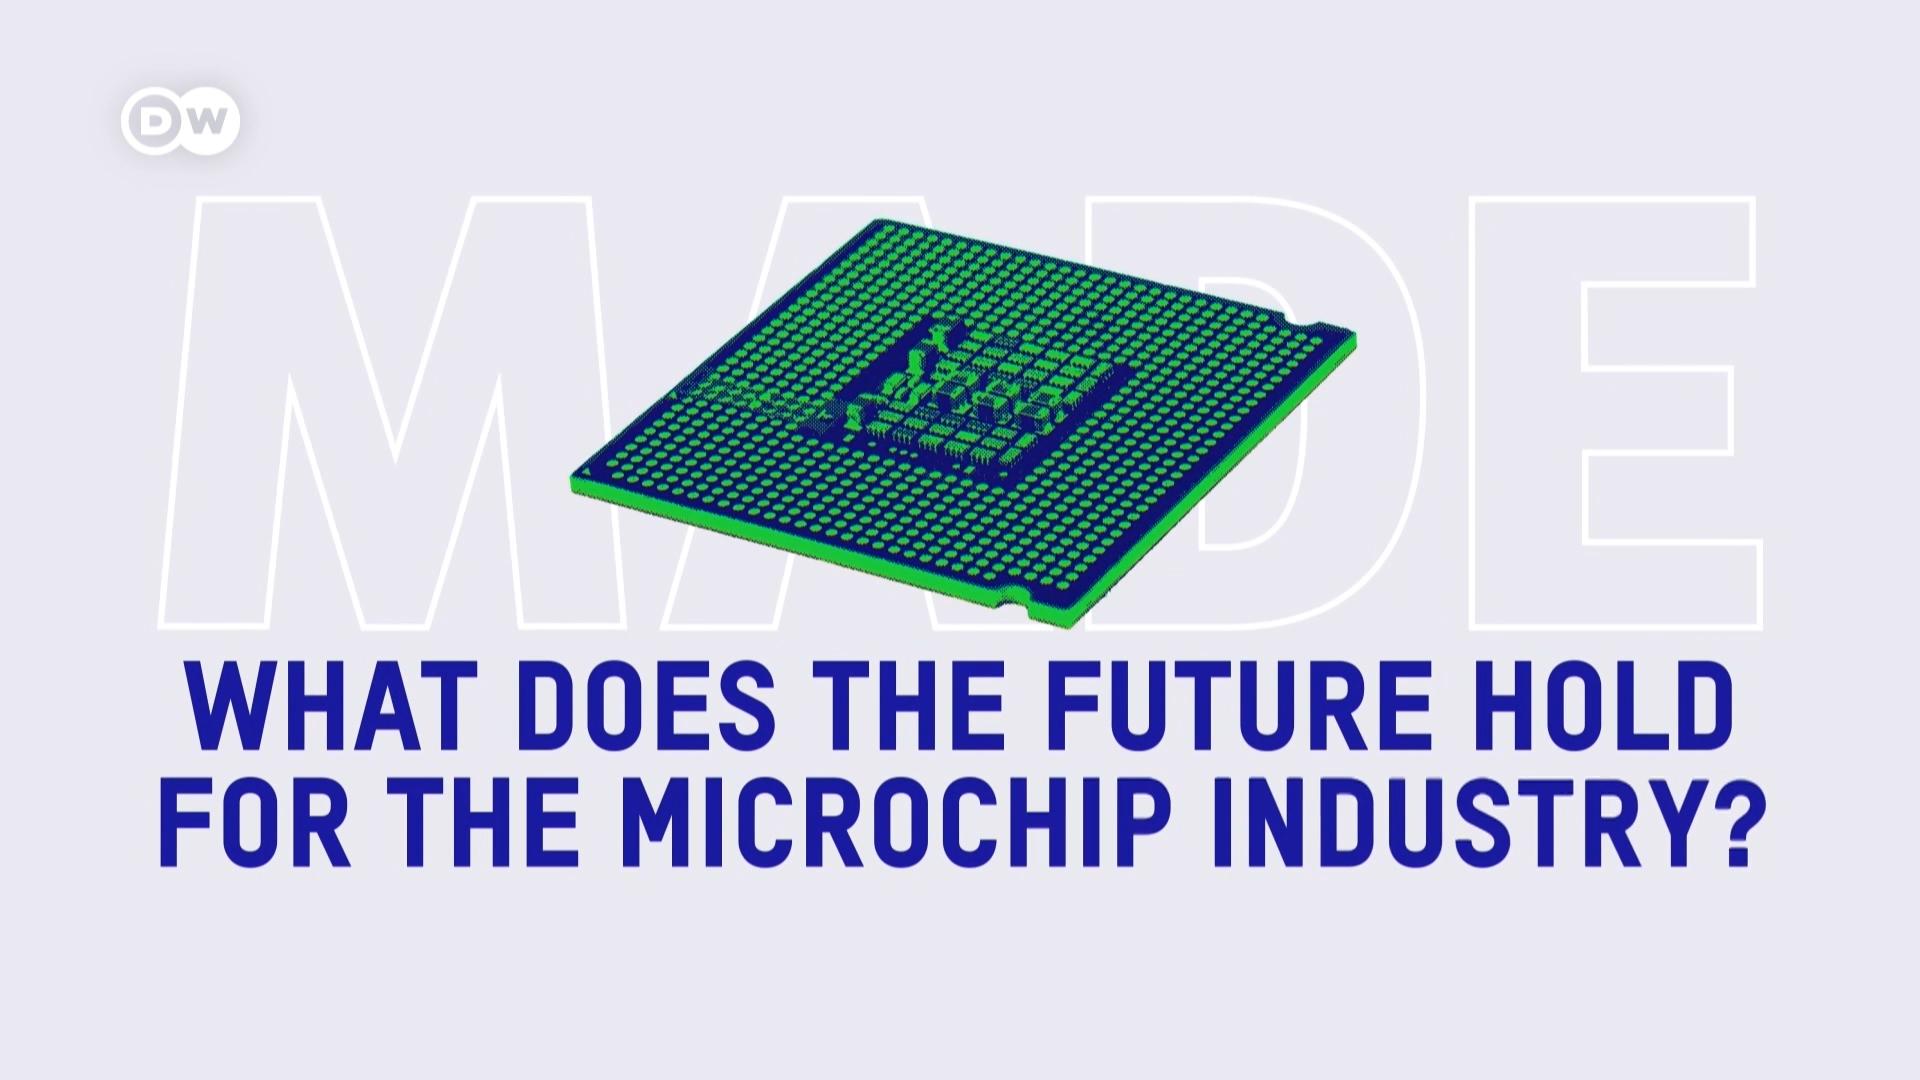 芯片产业的未来会是怎样的呢？全球正展开竞赛，争相研发最小、最强大的微芯片，投资数百亿美元建设工厂。